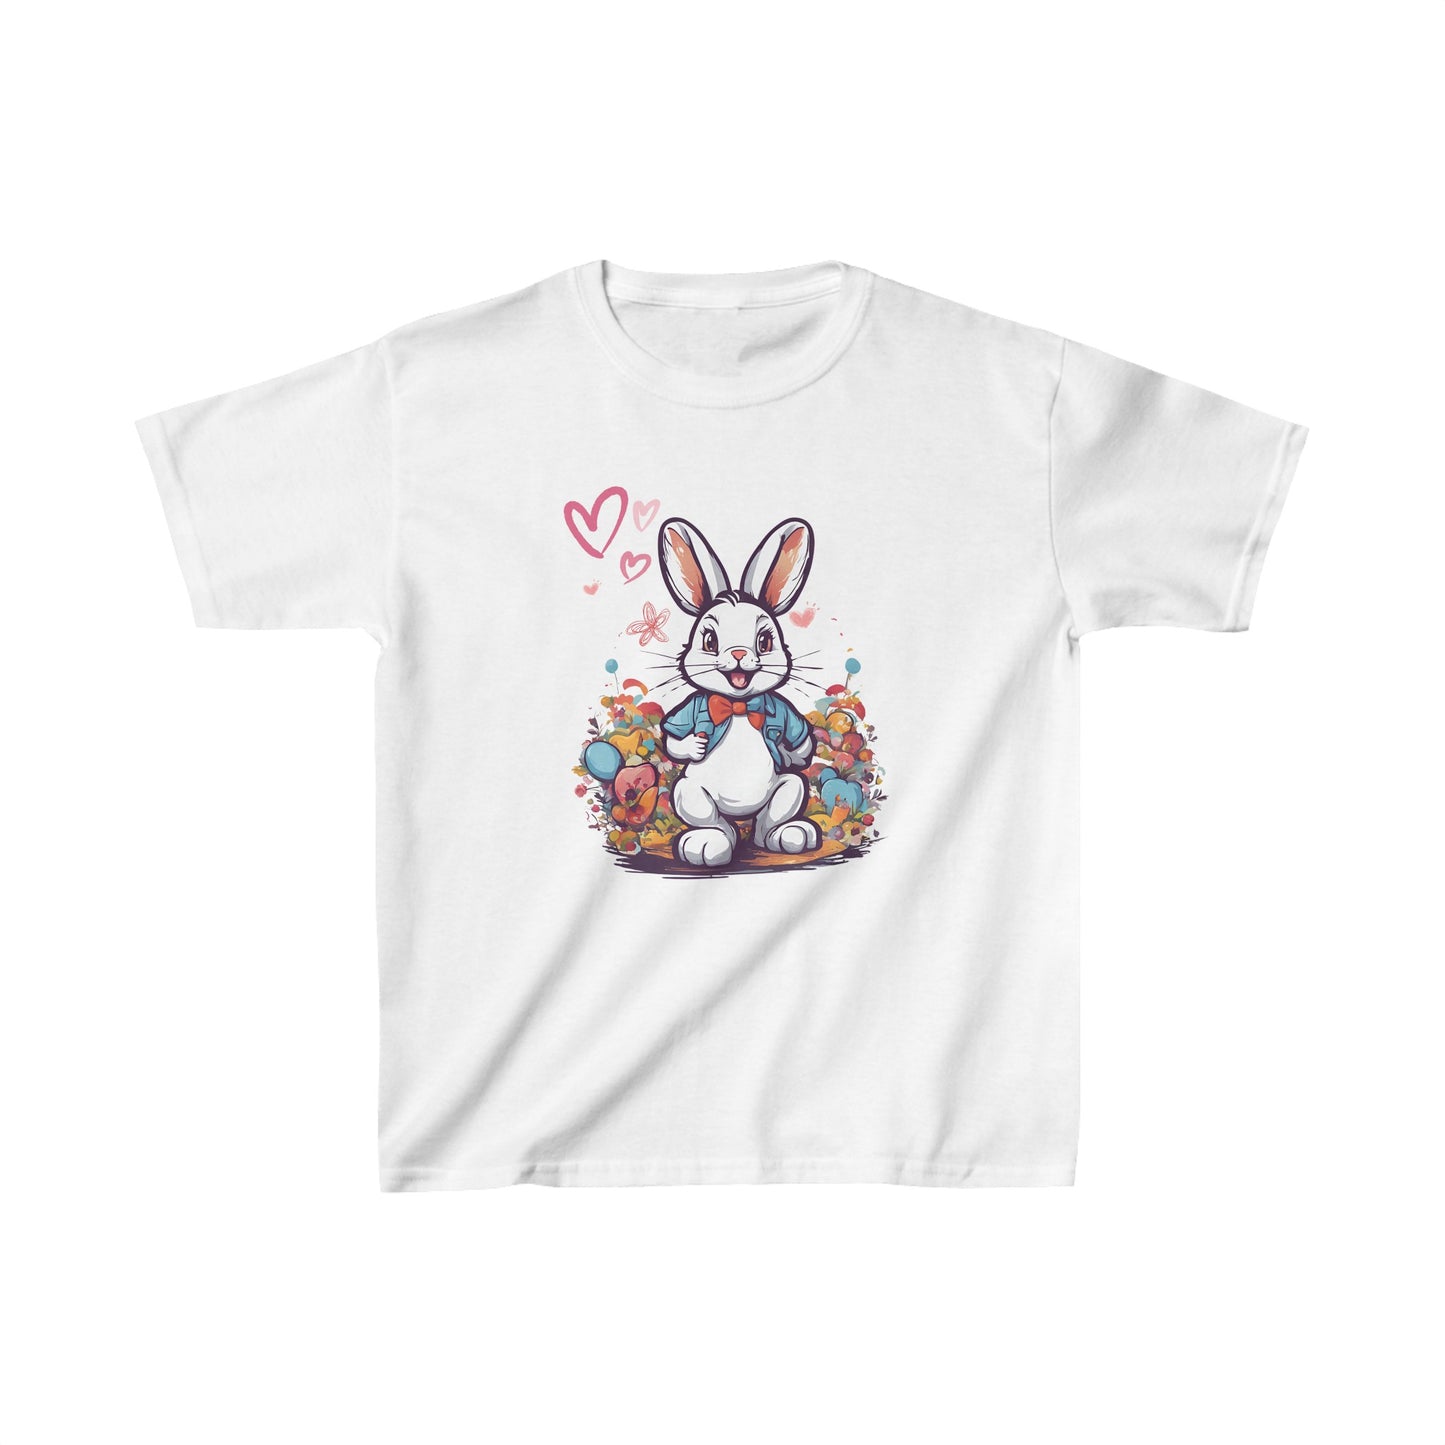 Camiseta manga corta unisex, con conejo estilo Alicia en el país de las maravillas